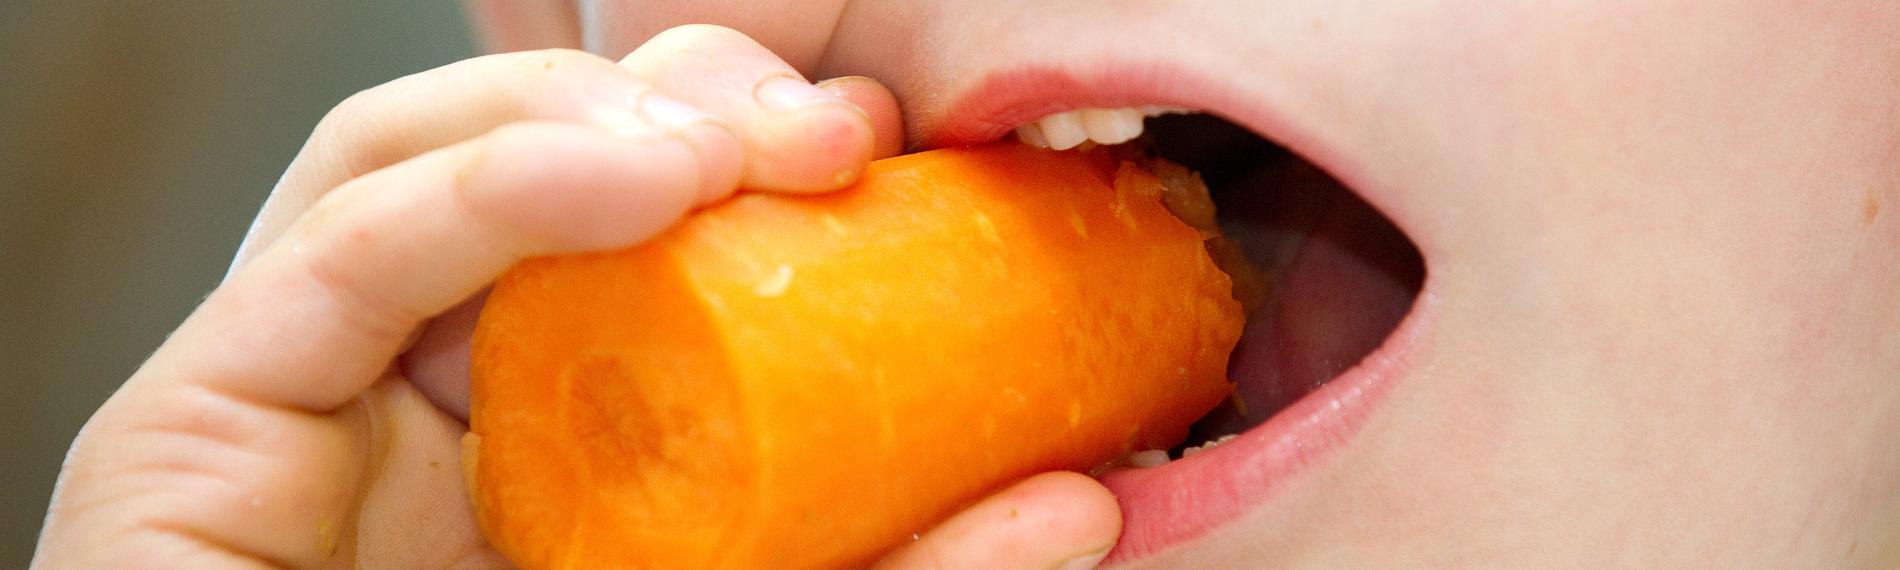 Kind beißt in eine Karotte